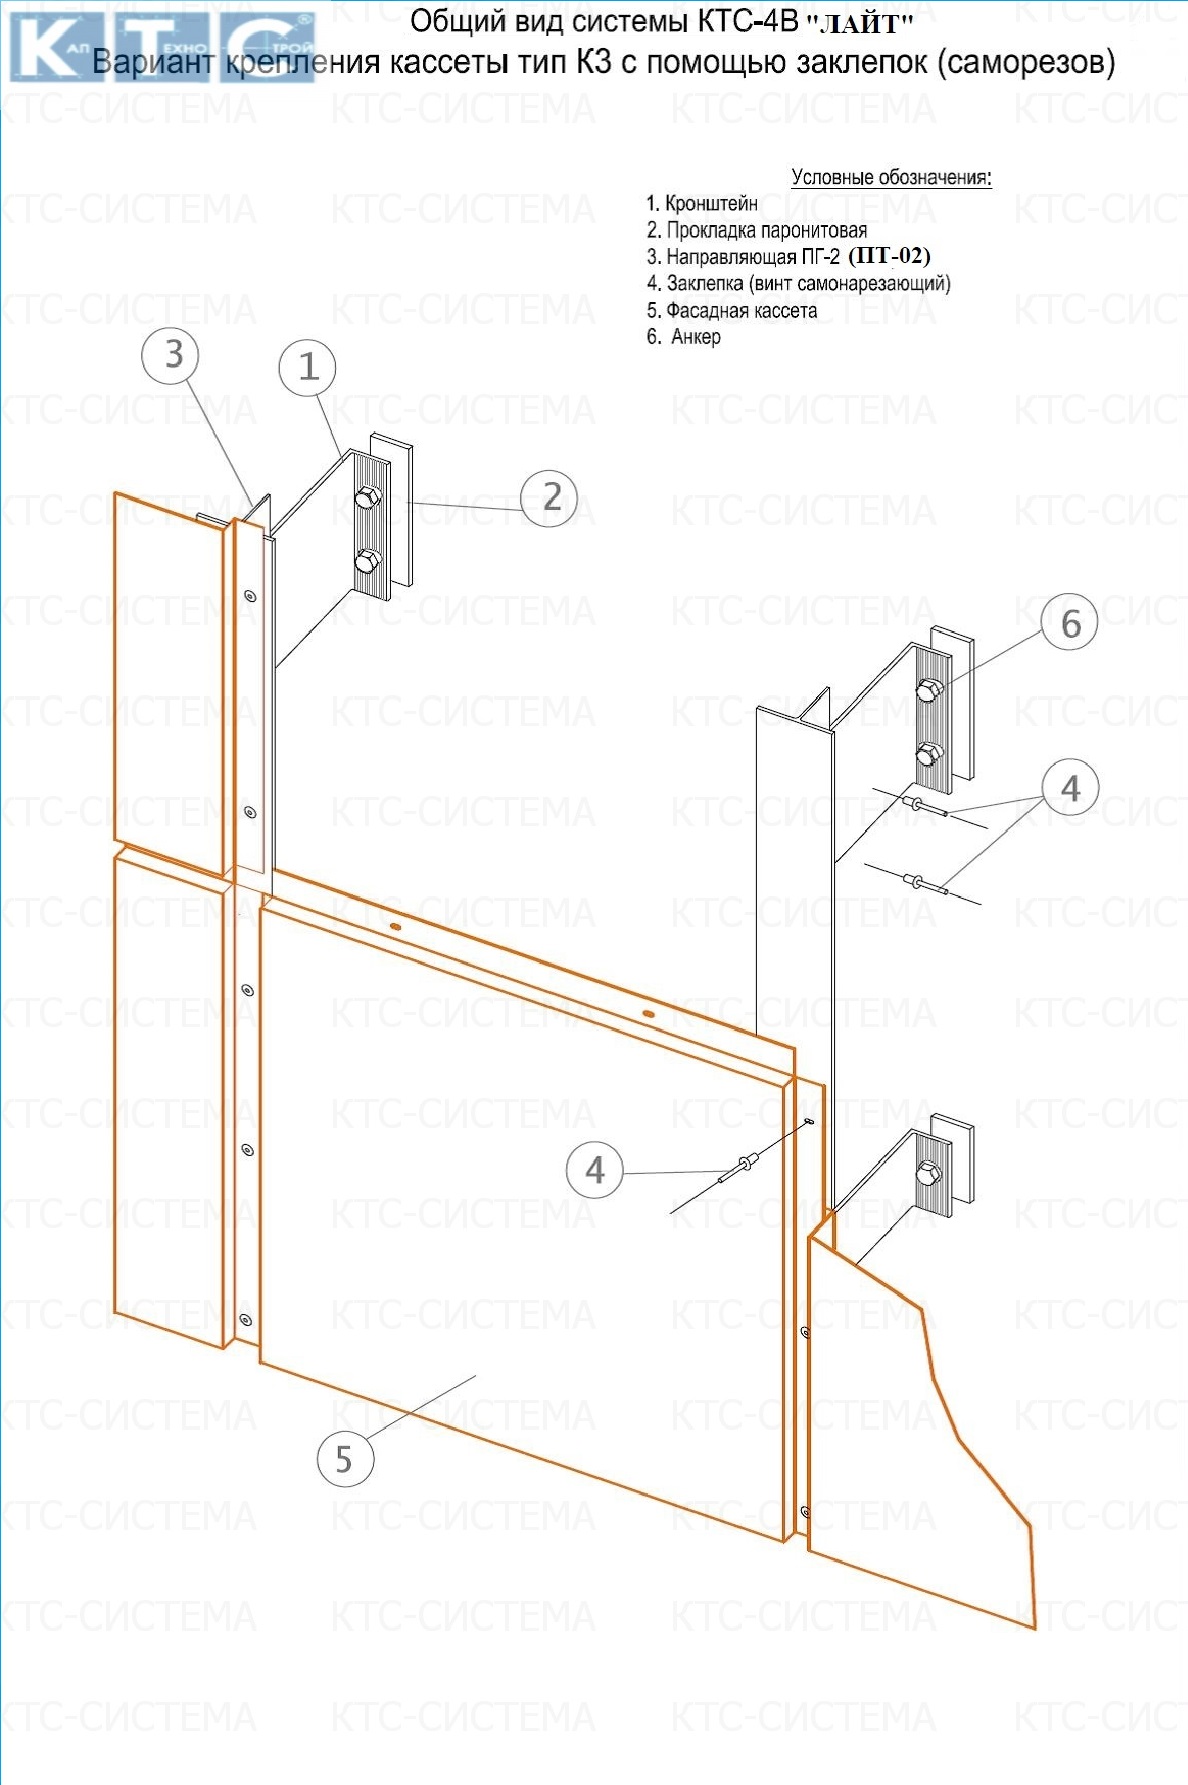 Фасадные системы  и подсистемы - КТС-4В "Лайт" для композитных панелей